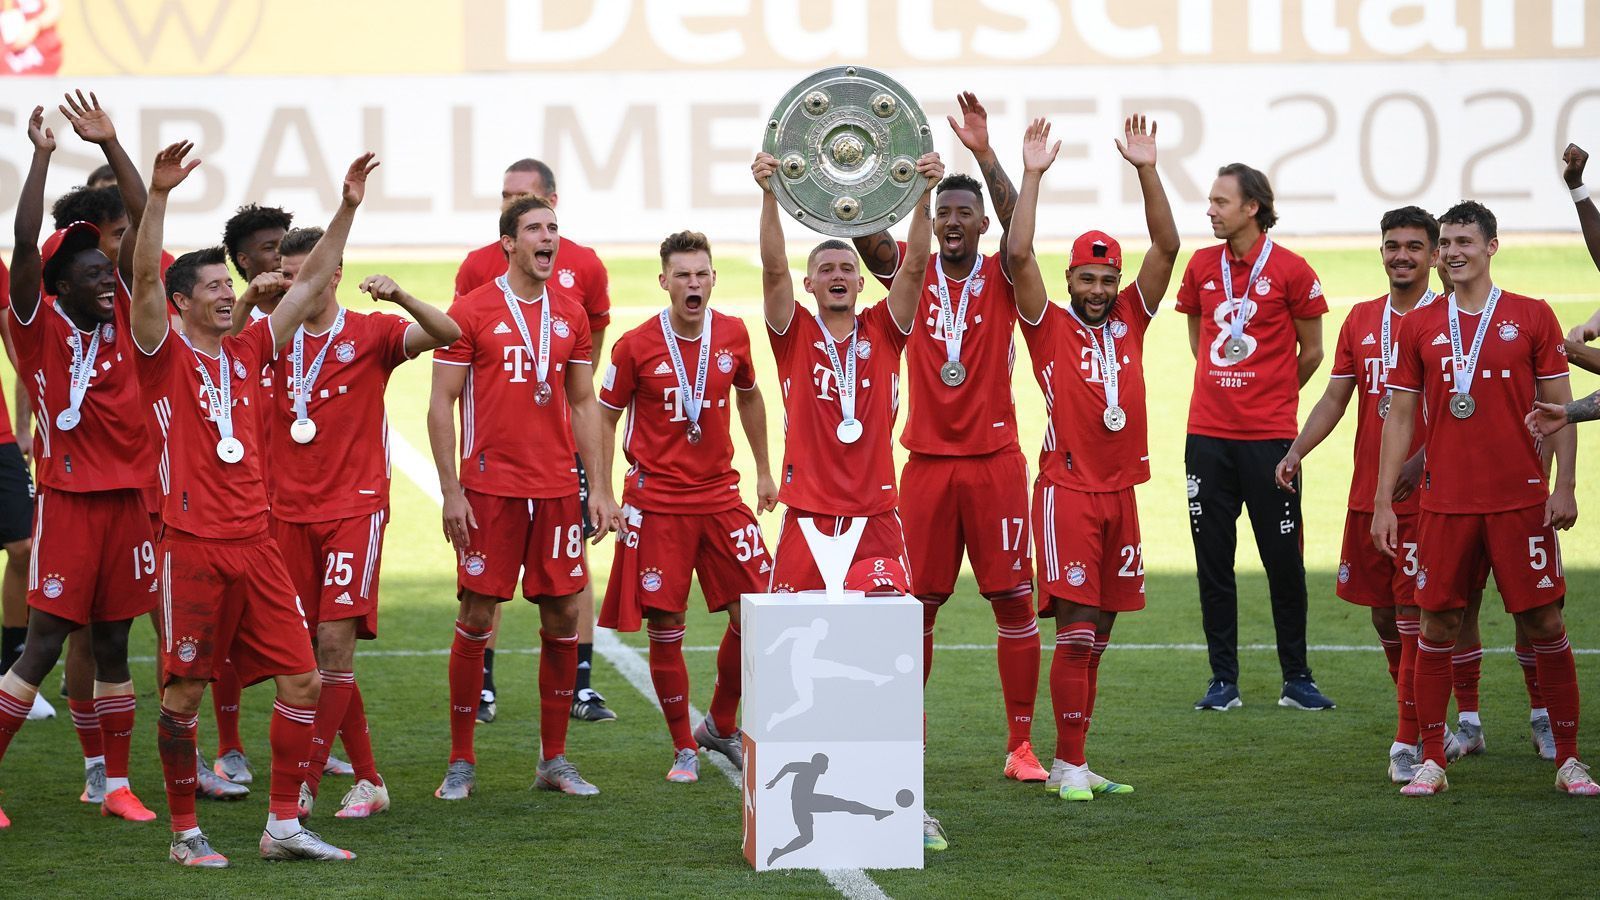 
                <strong>49 Punkte und +44 Tore! FC Bayern spielte Rekord-Rückrunde</strong><br>
                16 Siege, ein Remis. Die Rückrunde des FC Bayern München war makellos und ein Hauptgrund für den letztlich einmal mehr souverän eingefahrenen Meistertitel. Mit 49 von möglichen 51 Punkten sowie einem Torverhältnis von +44 hat die Mannschaft um Trainer Hansi Flick sogar einen neuen Bundesliga-Rekord aufgestellt. Noch nie zuvor gelang es einer Mannschaft, in einer Bundesliga-Rückrunde ebenfalls so viele Punkte einzufahren und dann auch noch so ein hervorragendes Torverhältnis aufzuweisen. Die Münchner verbesserten durch den 4:0-Sieg am 34. Spieltag in Wolfsburg die eigene Bestmarke aus der Saison 2012/13 (damals ebenfalls 49 Rückrunden-Punkte und ein Torverhältnis von +43). (Quelle: optafranz/twitter)
              